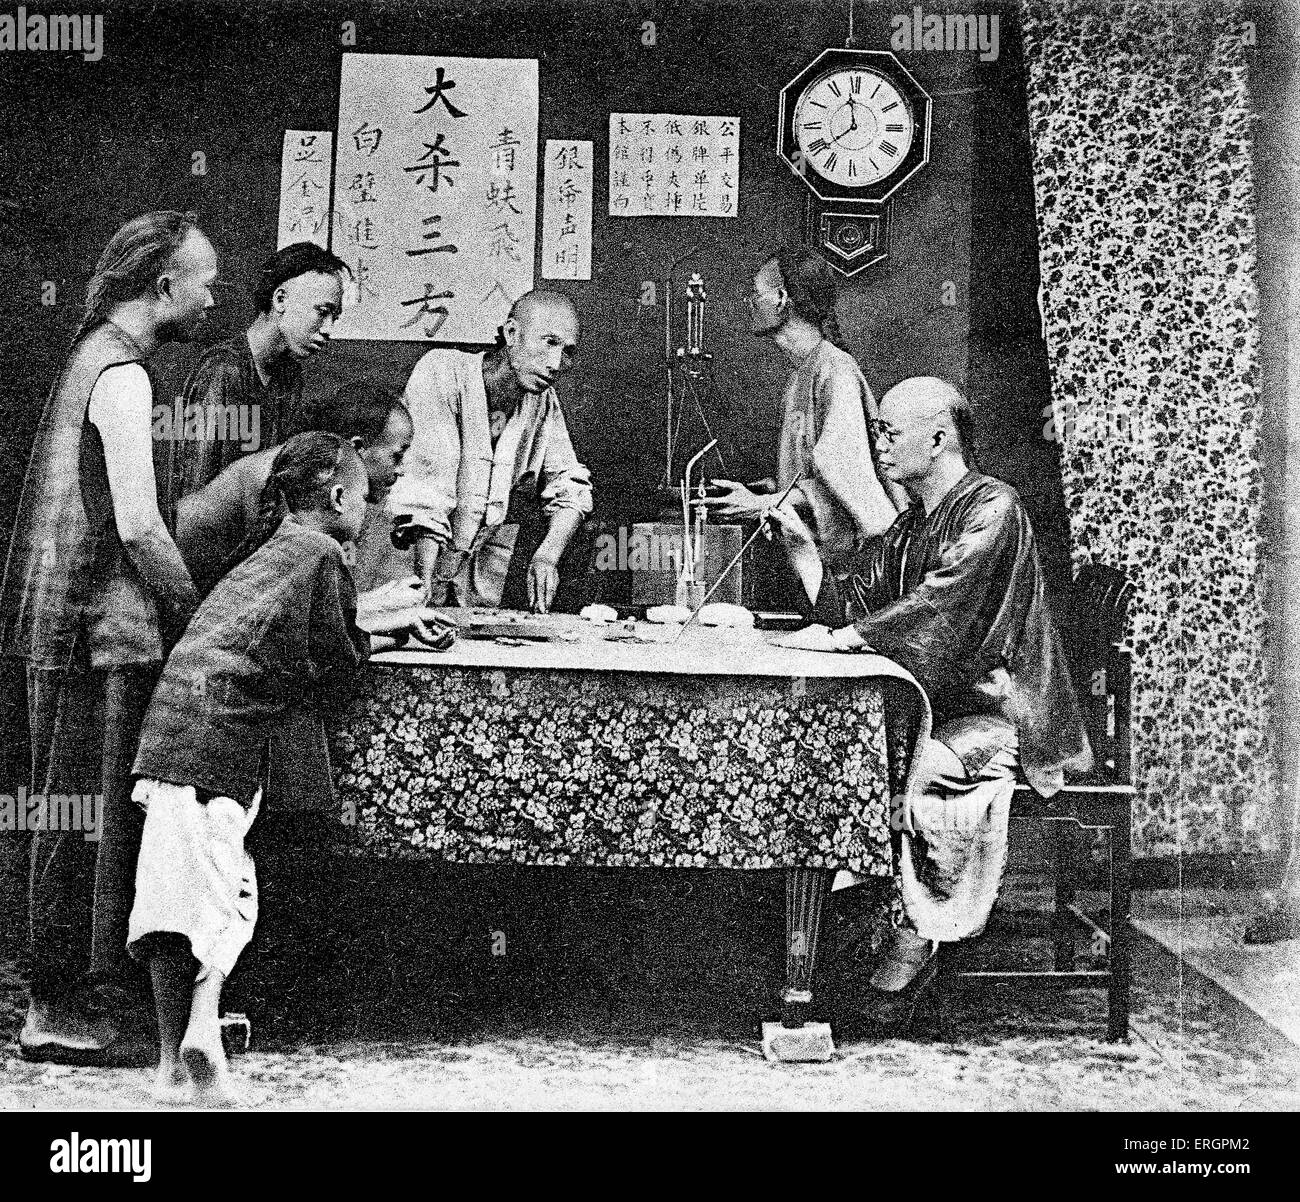 Gruppo di uomini giocando Fan-Tan, una forma di gioco d'azzardo. Nei primi anni del XX secolo. Cina, Hong Kong sotto amministrazione britannica. Foto Stock